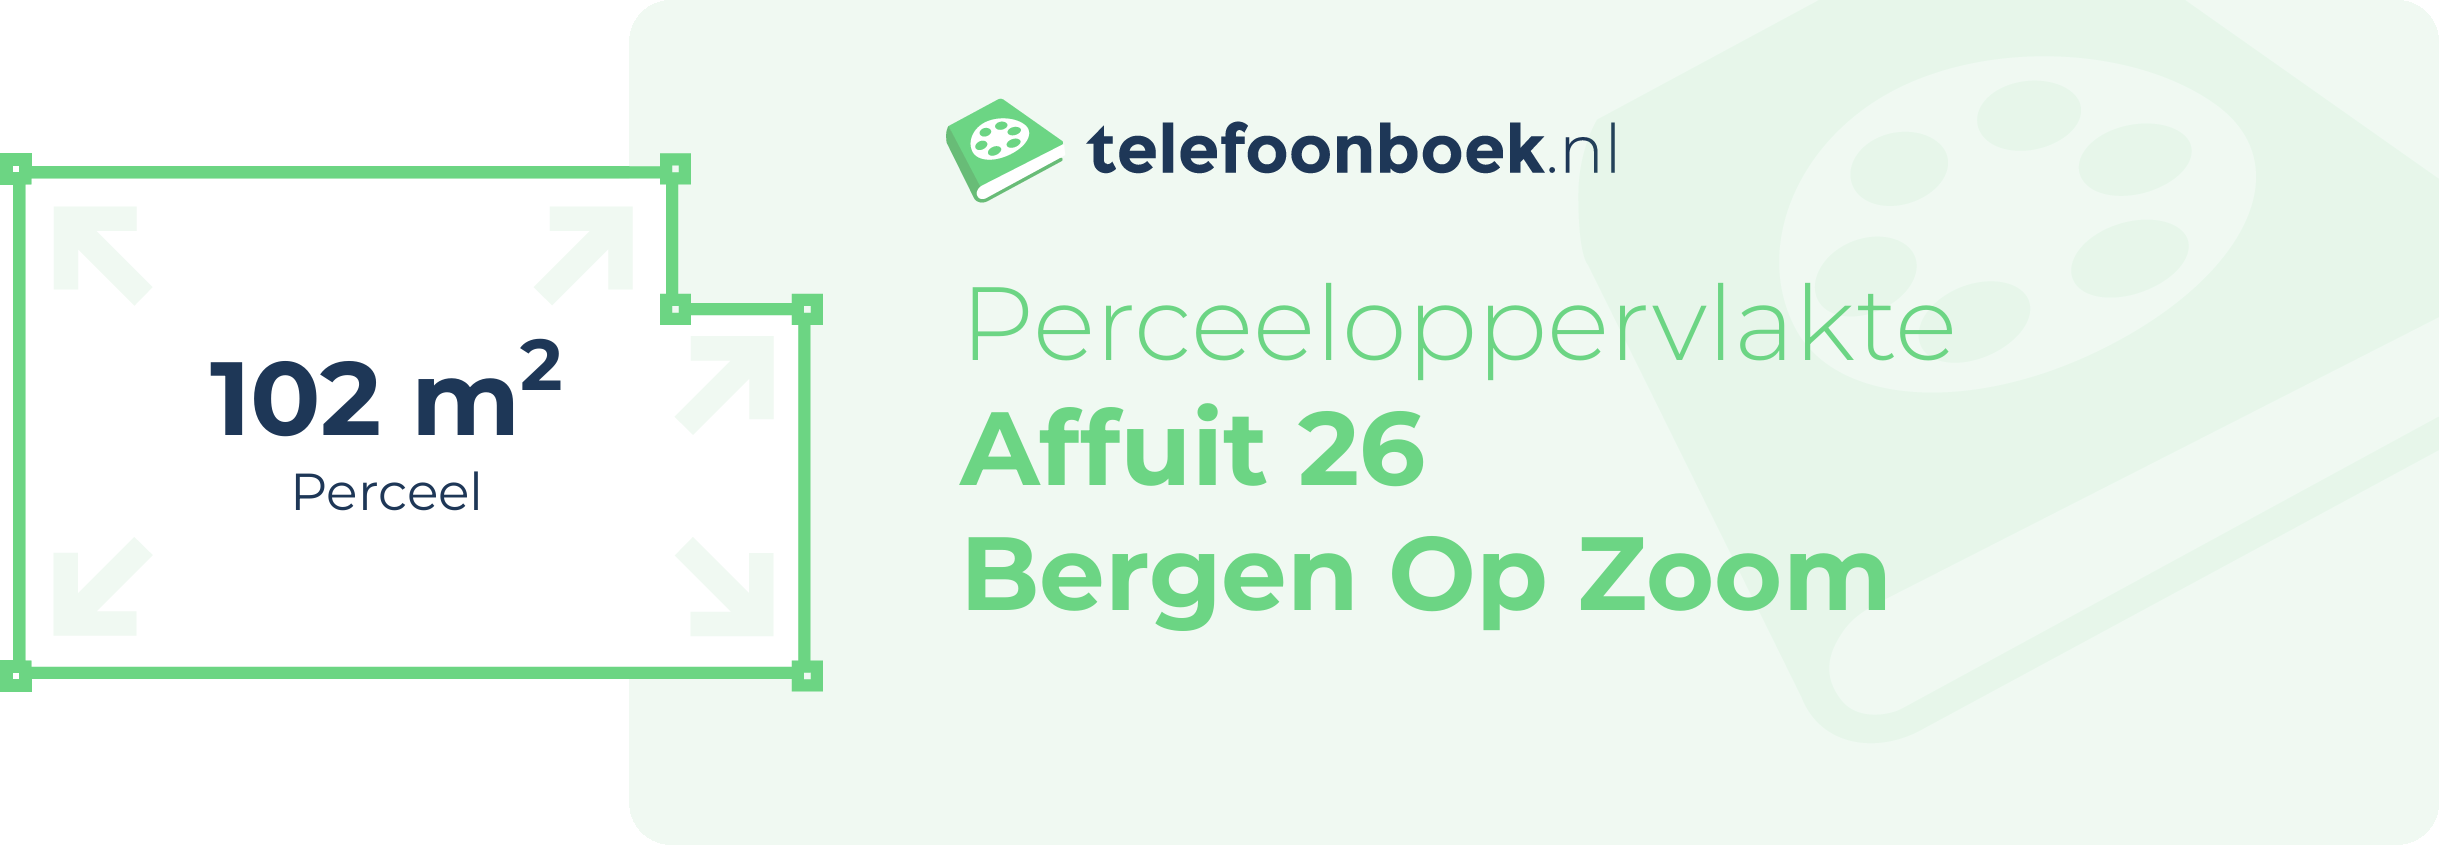 Perceeloppervlakte Affuit 26 Bergen Op Zoom